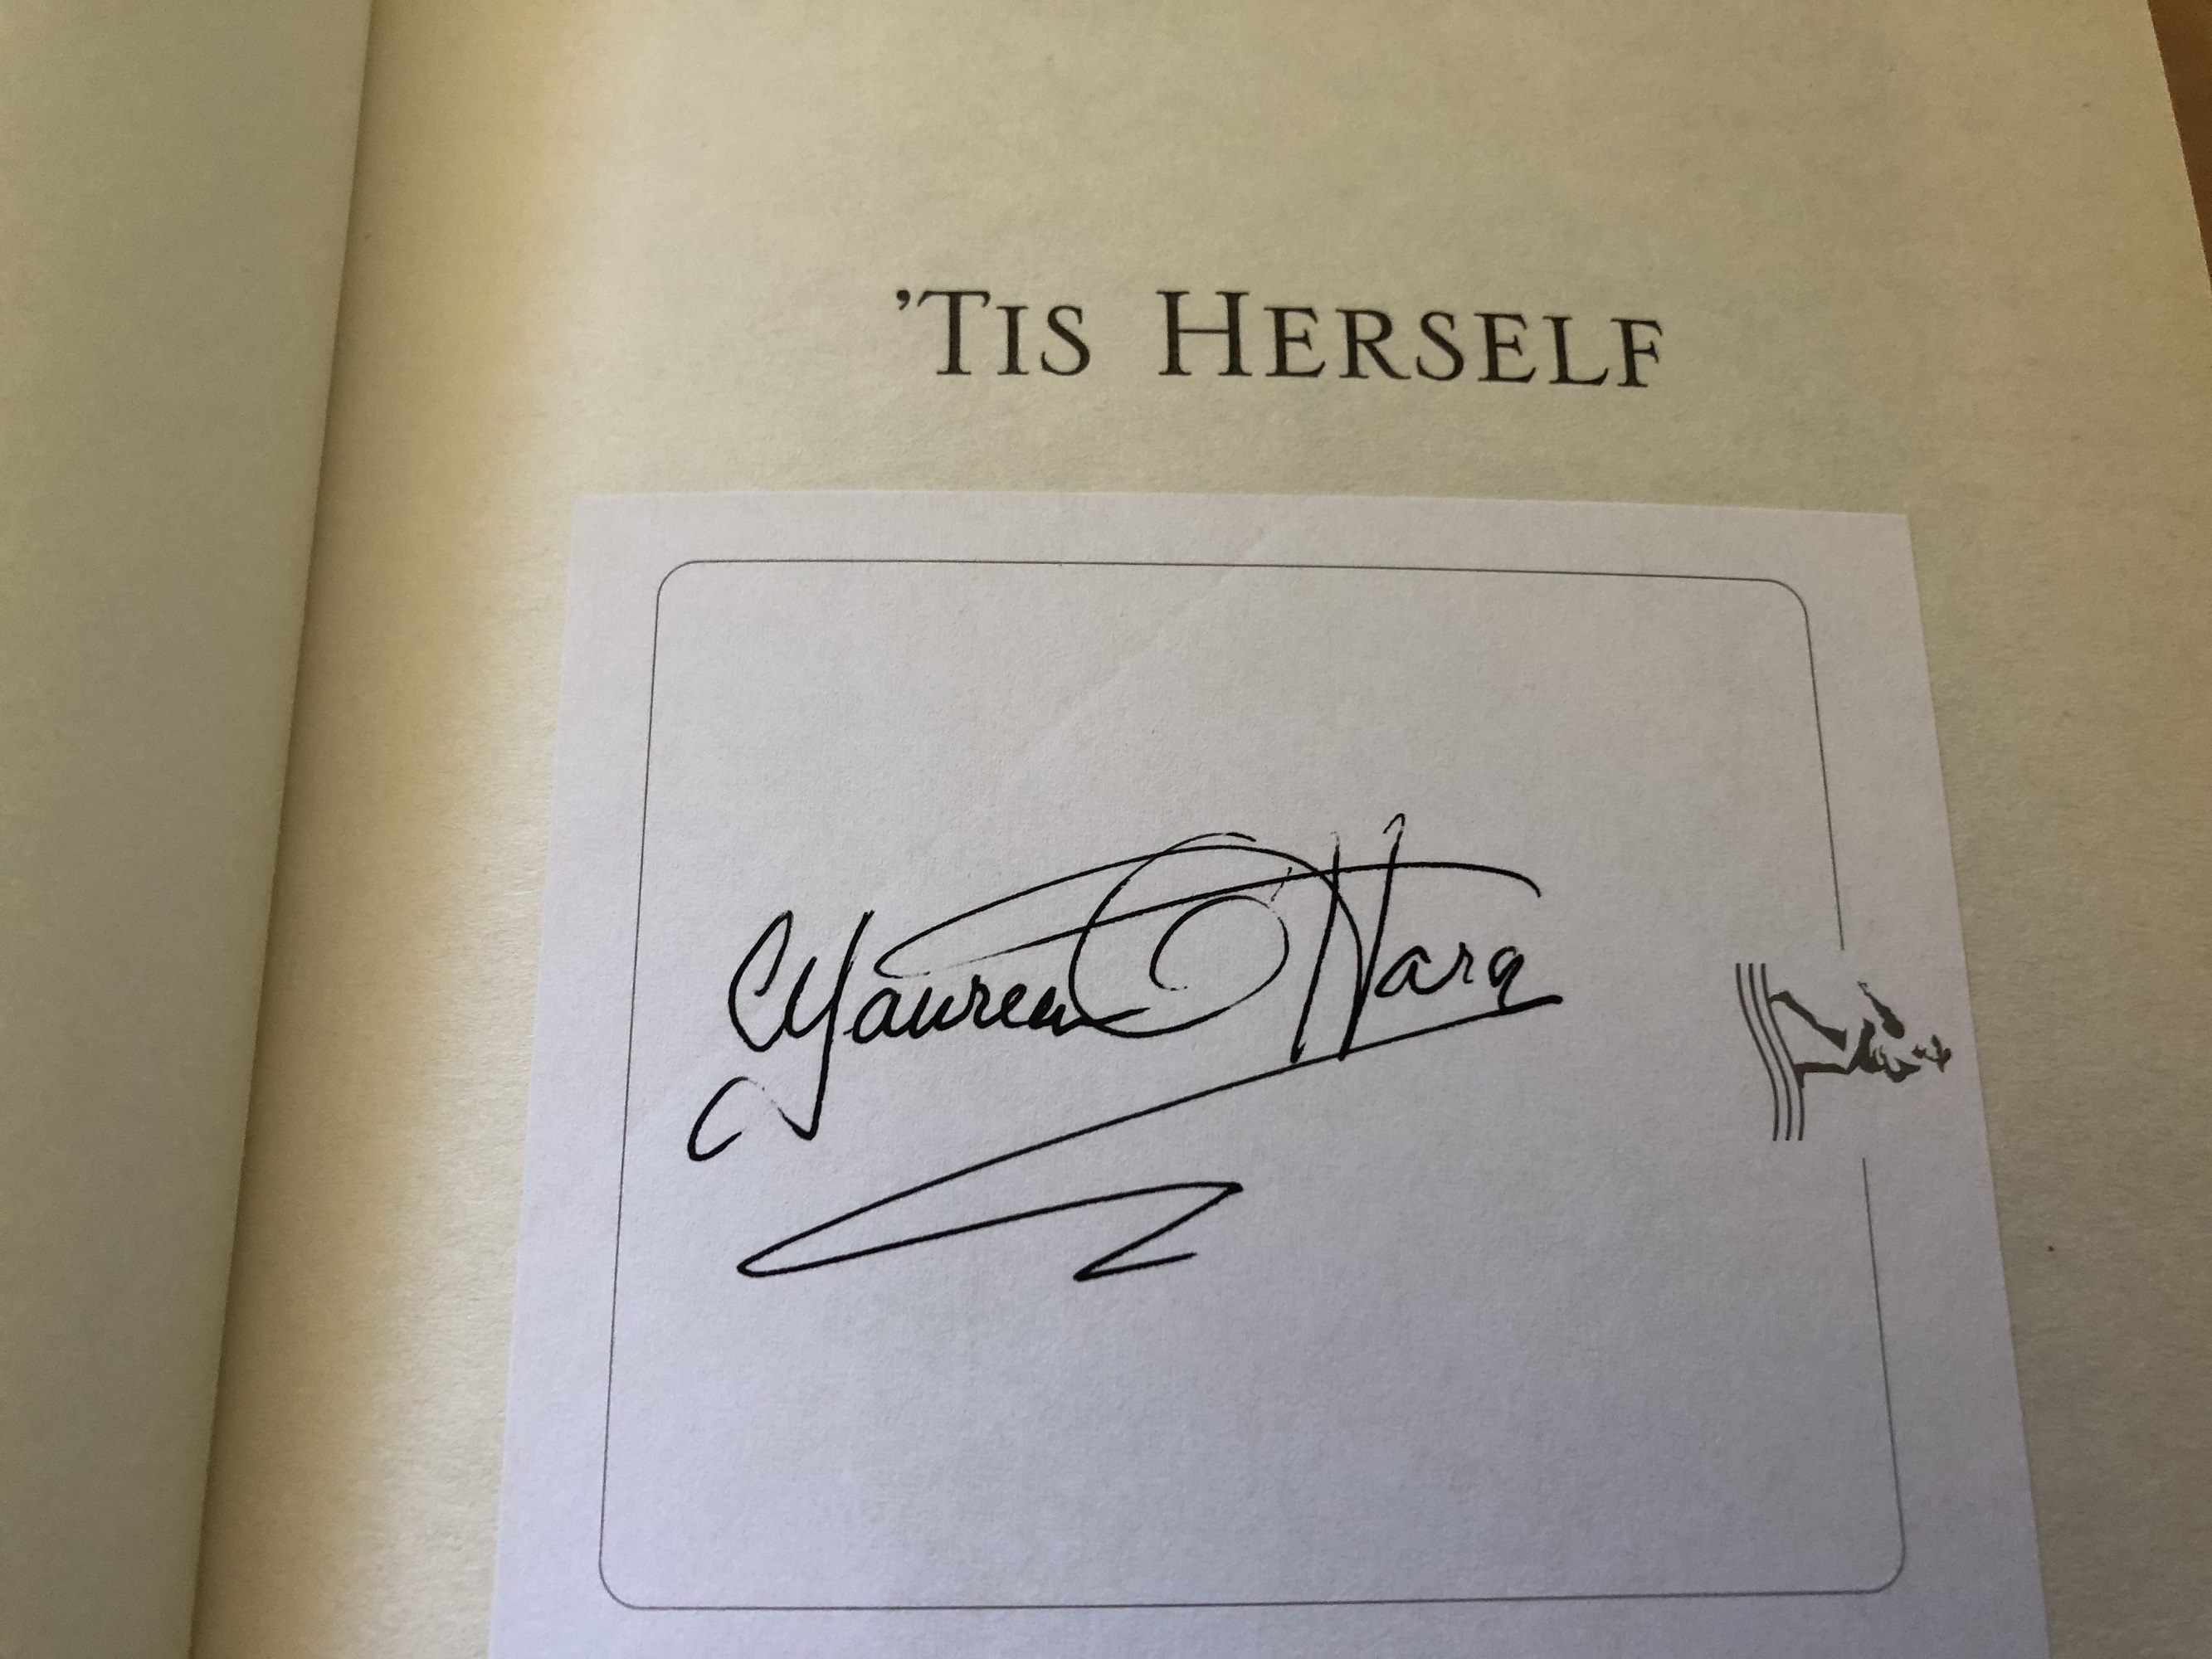 Maureen O'Hara signed book